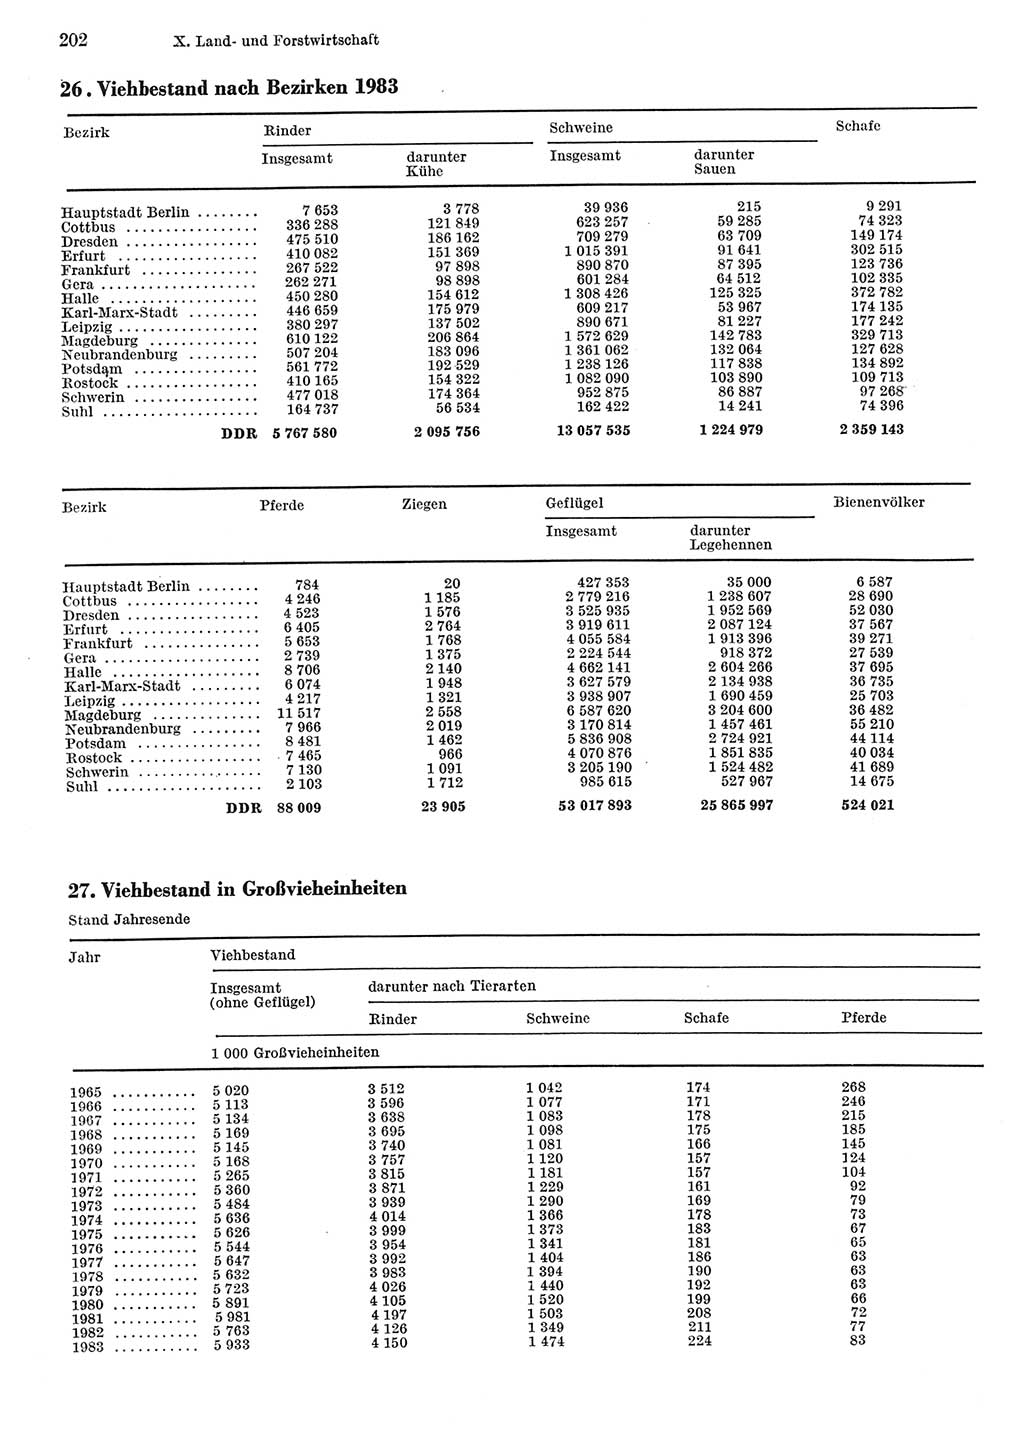 Statistisches Jahrbuch der Deutschen Demokratischen Republik (DDR) 1984, Seite 202 (Stat. Jb. DDR 1984, S. 202)